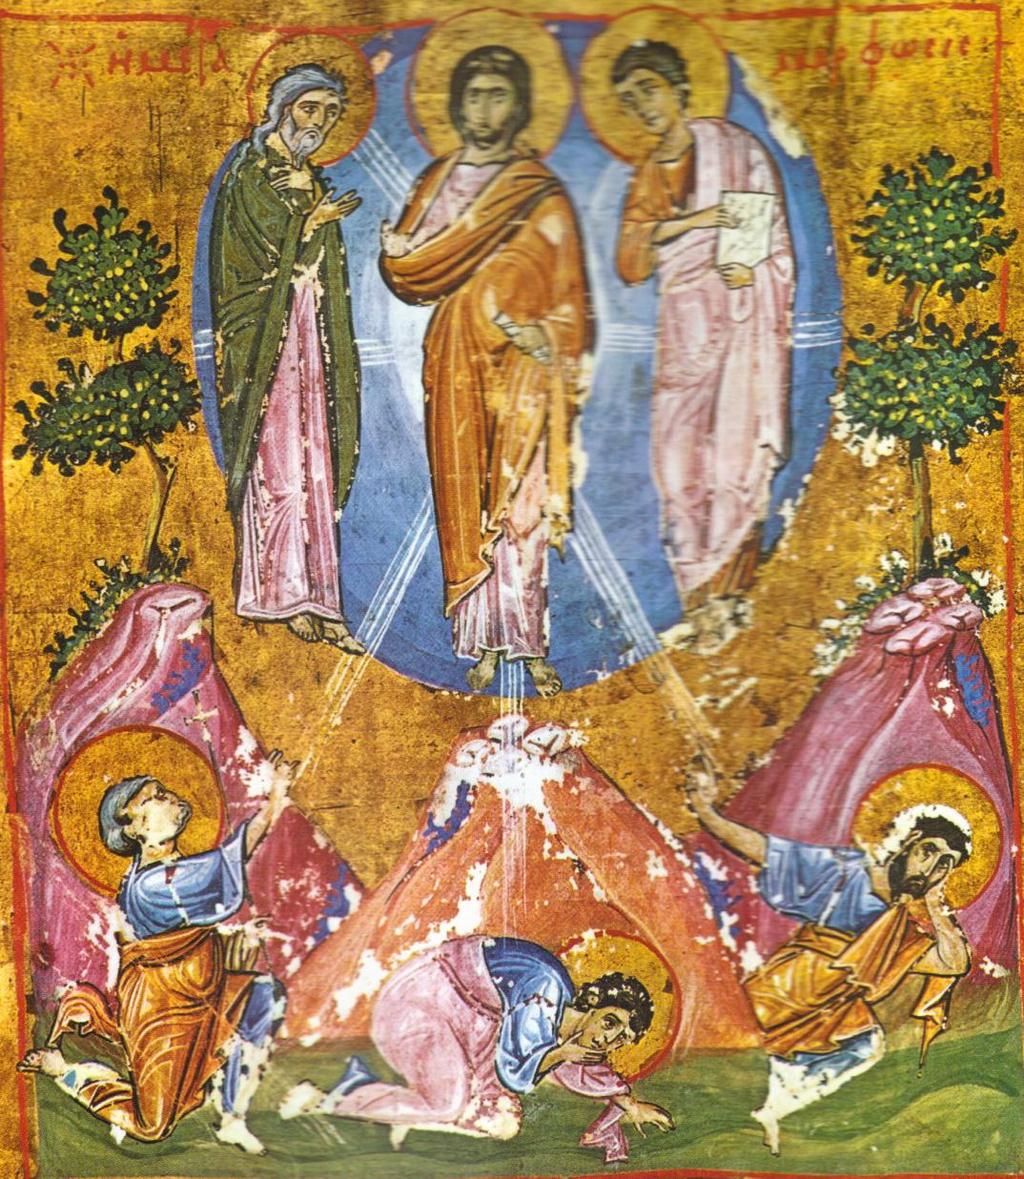 Μεταμόρφωση Σε ένα κυκλικό φωτεινό περίγραμμα πάνω από ένα βραχώδες όρος, απεικονίζεται ο Χριστός και ακτίνες φωτός εκπέμπονται από αυτό.